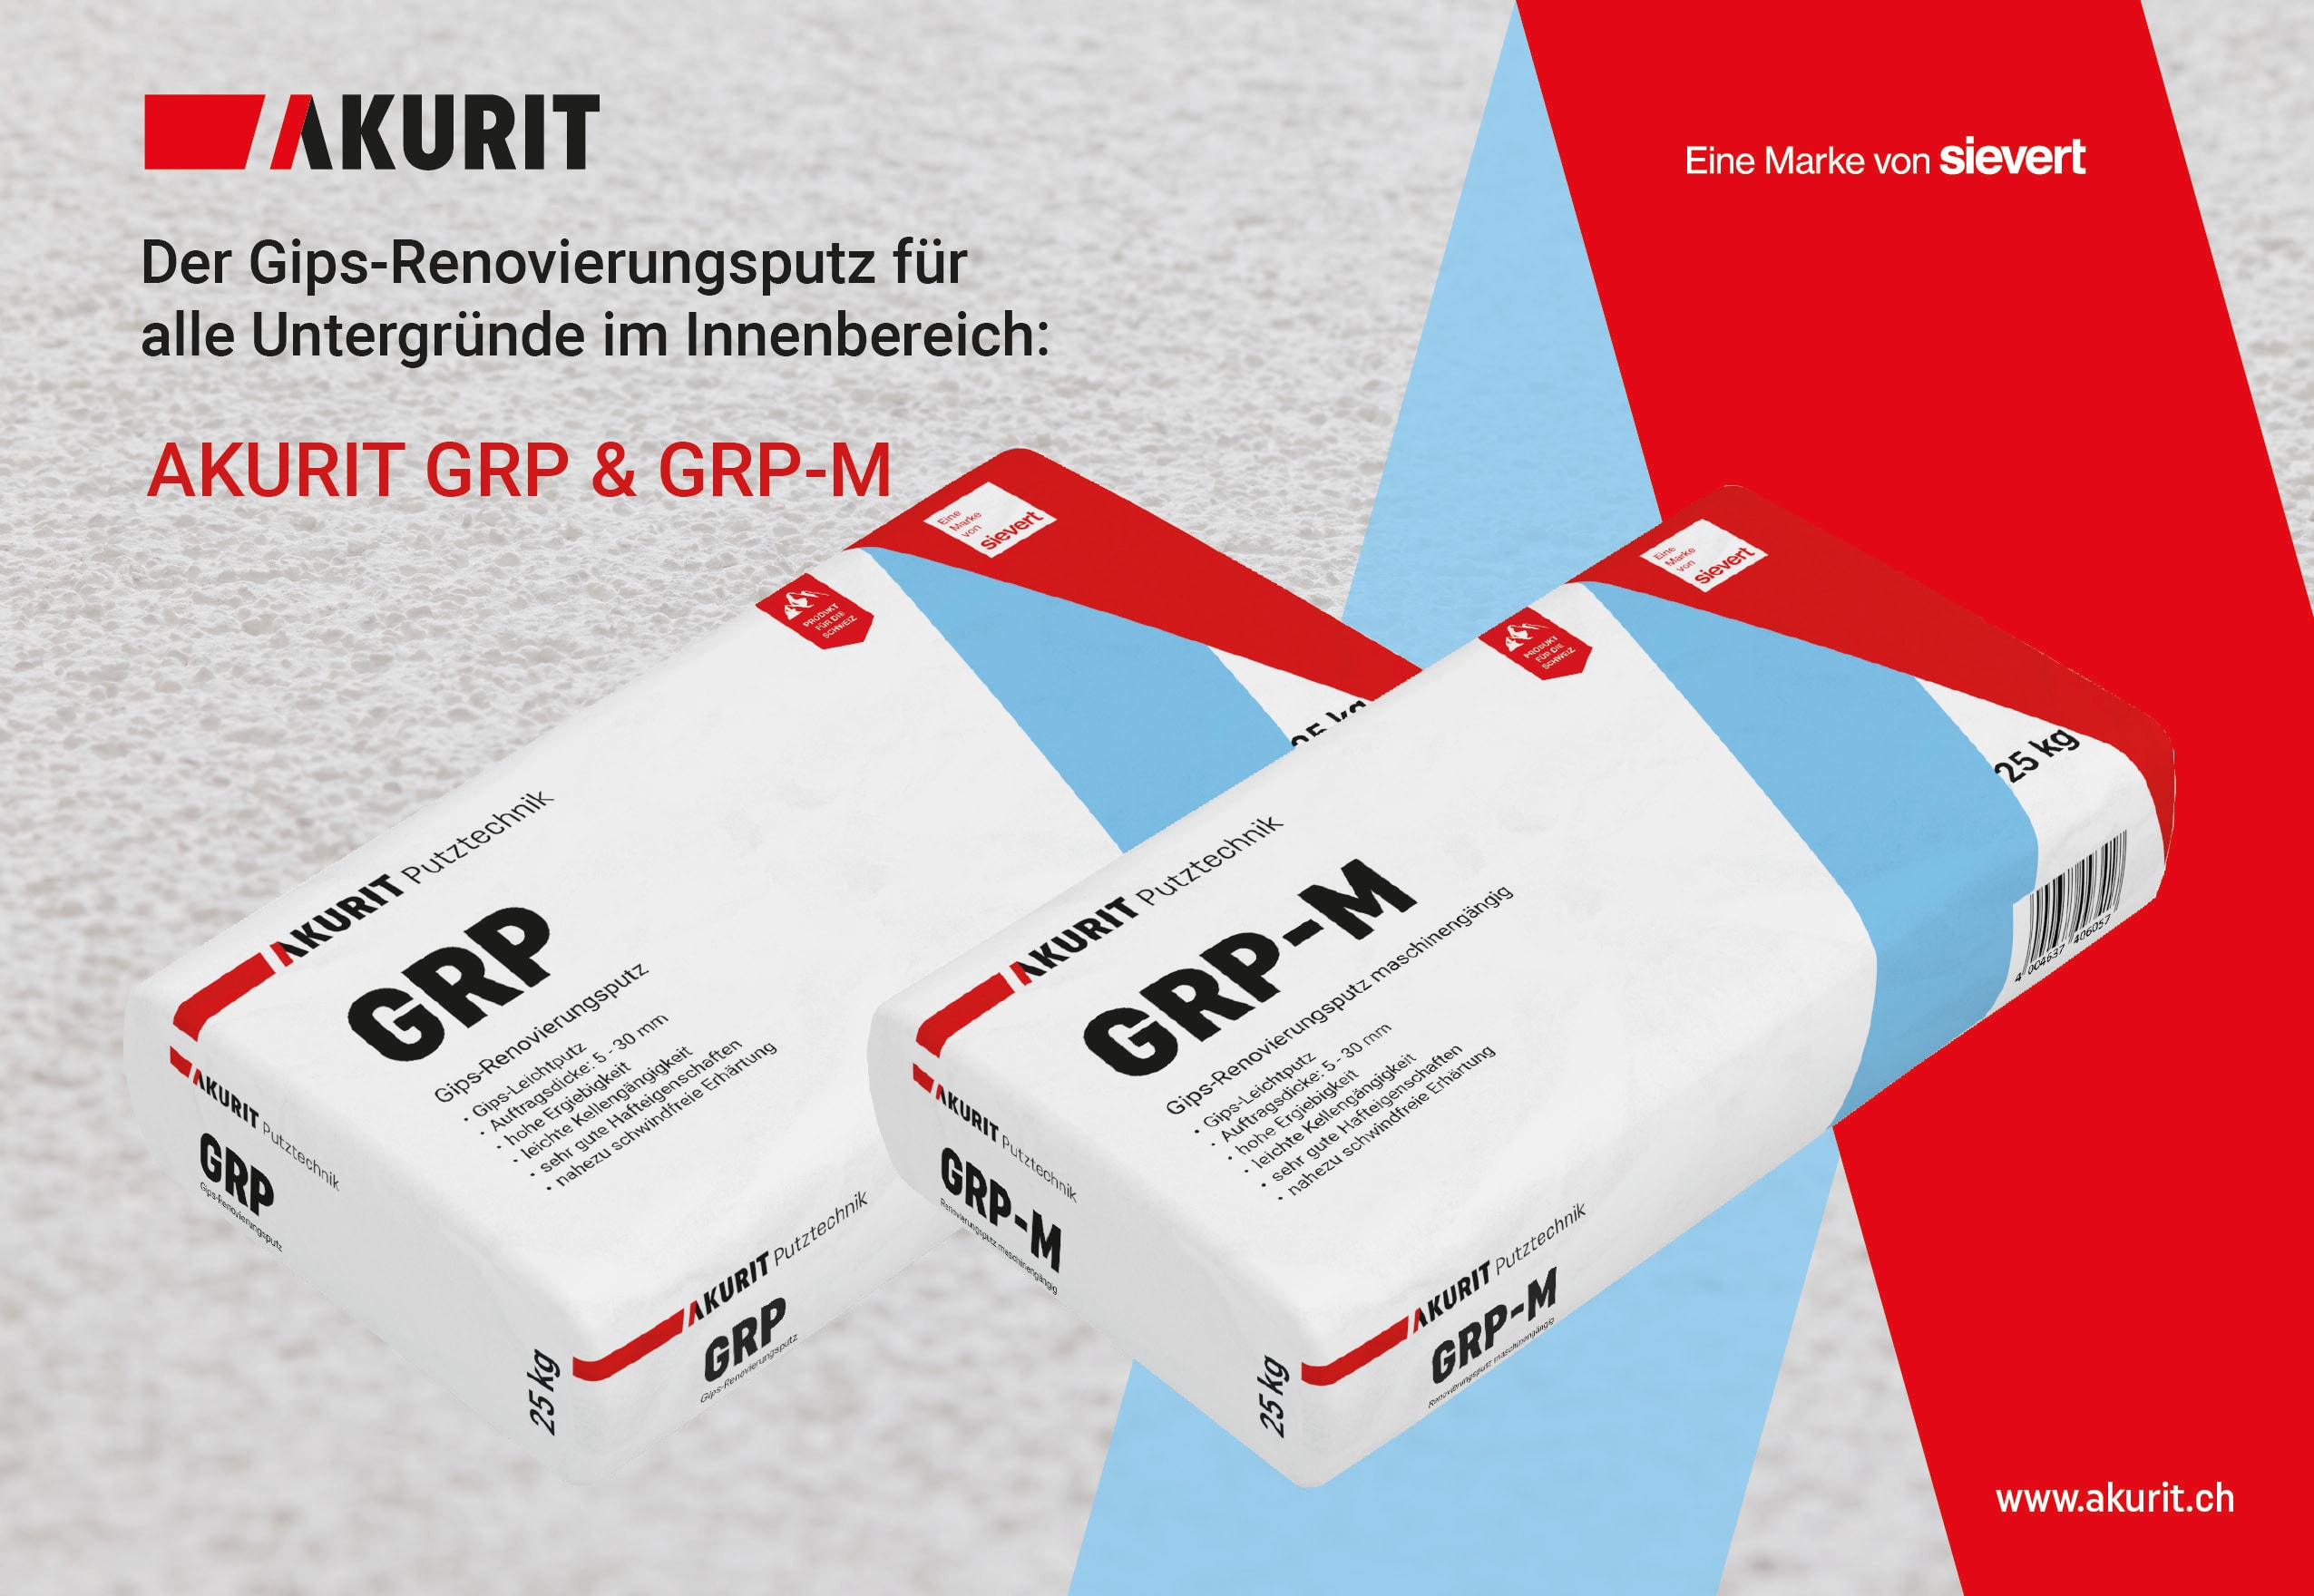 AKURIT GRP & GRP-M  der Gipsrenovierungsputz für fast alle Untergründe im Innenbereich.